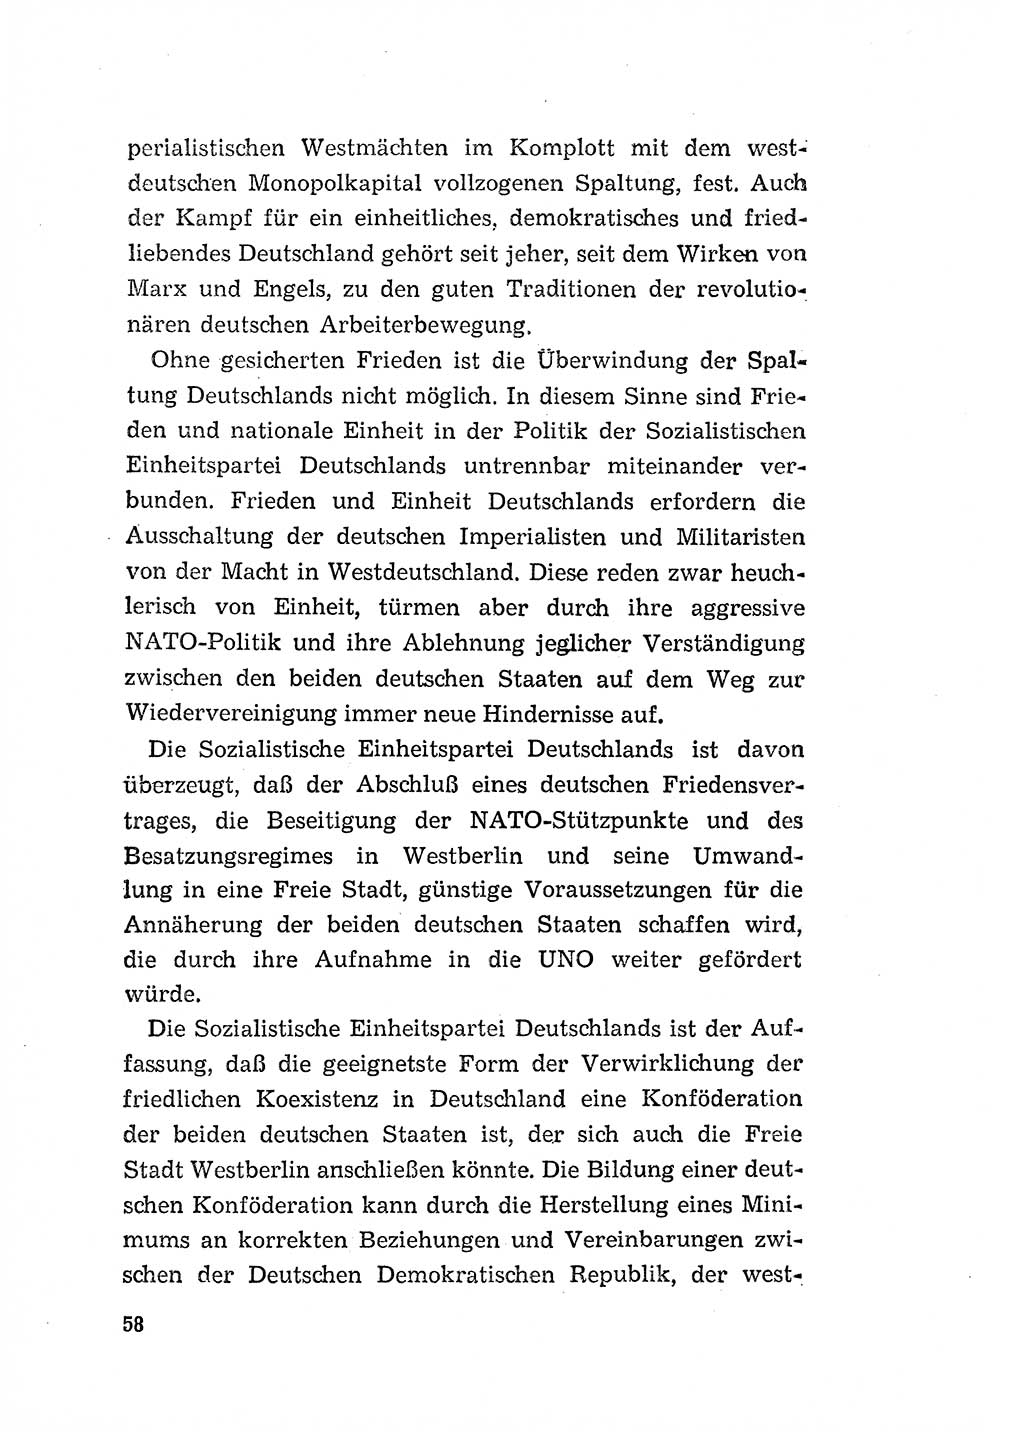 Programm der Sozialistischen Einheitspartei Deutschlands (SED) [Deutsche Demokratische Republik (DDR)] 1963, Seite 58 (Progr. SED DDR 1963, S. 58)